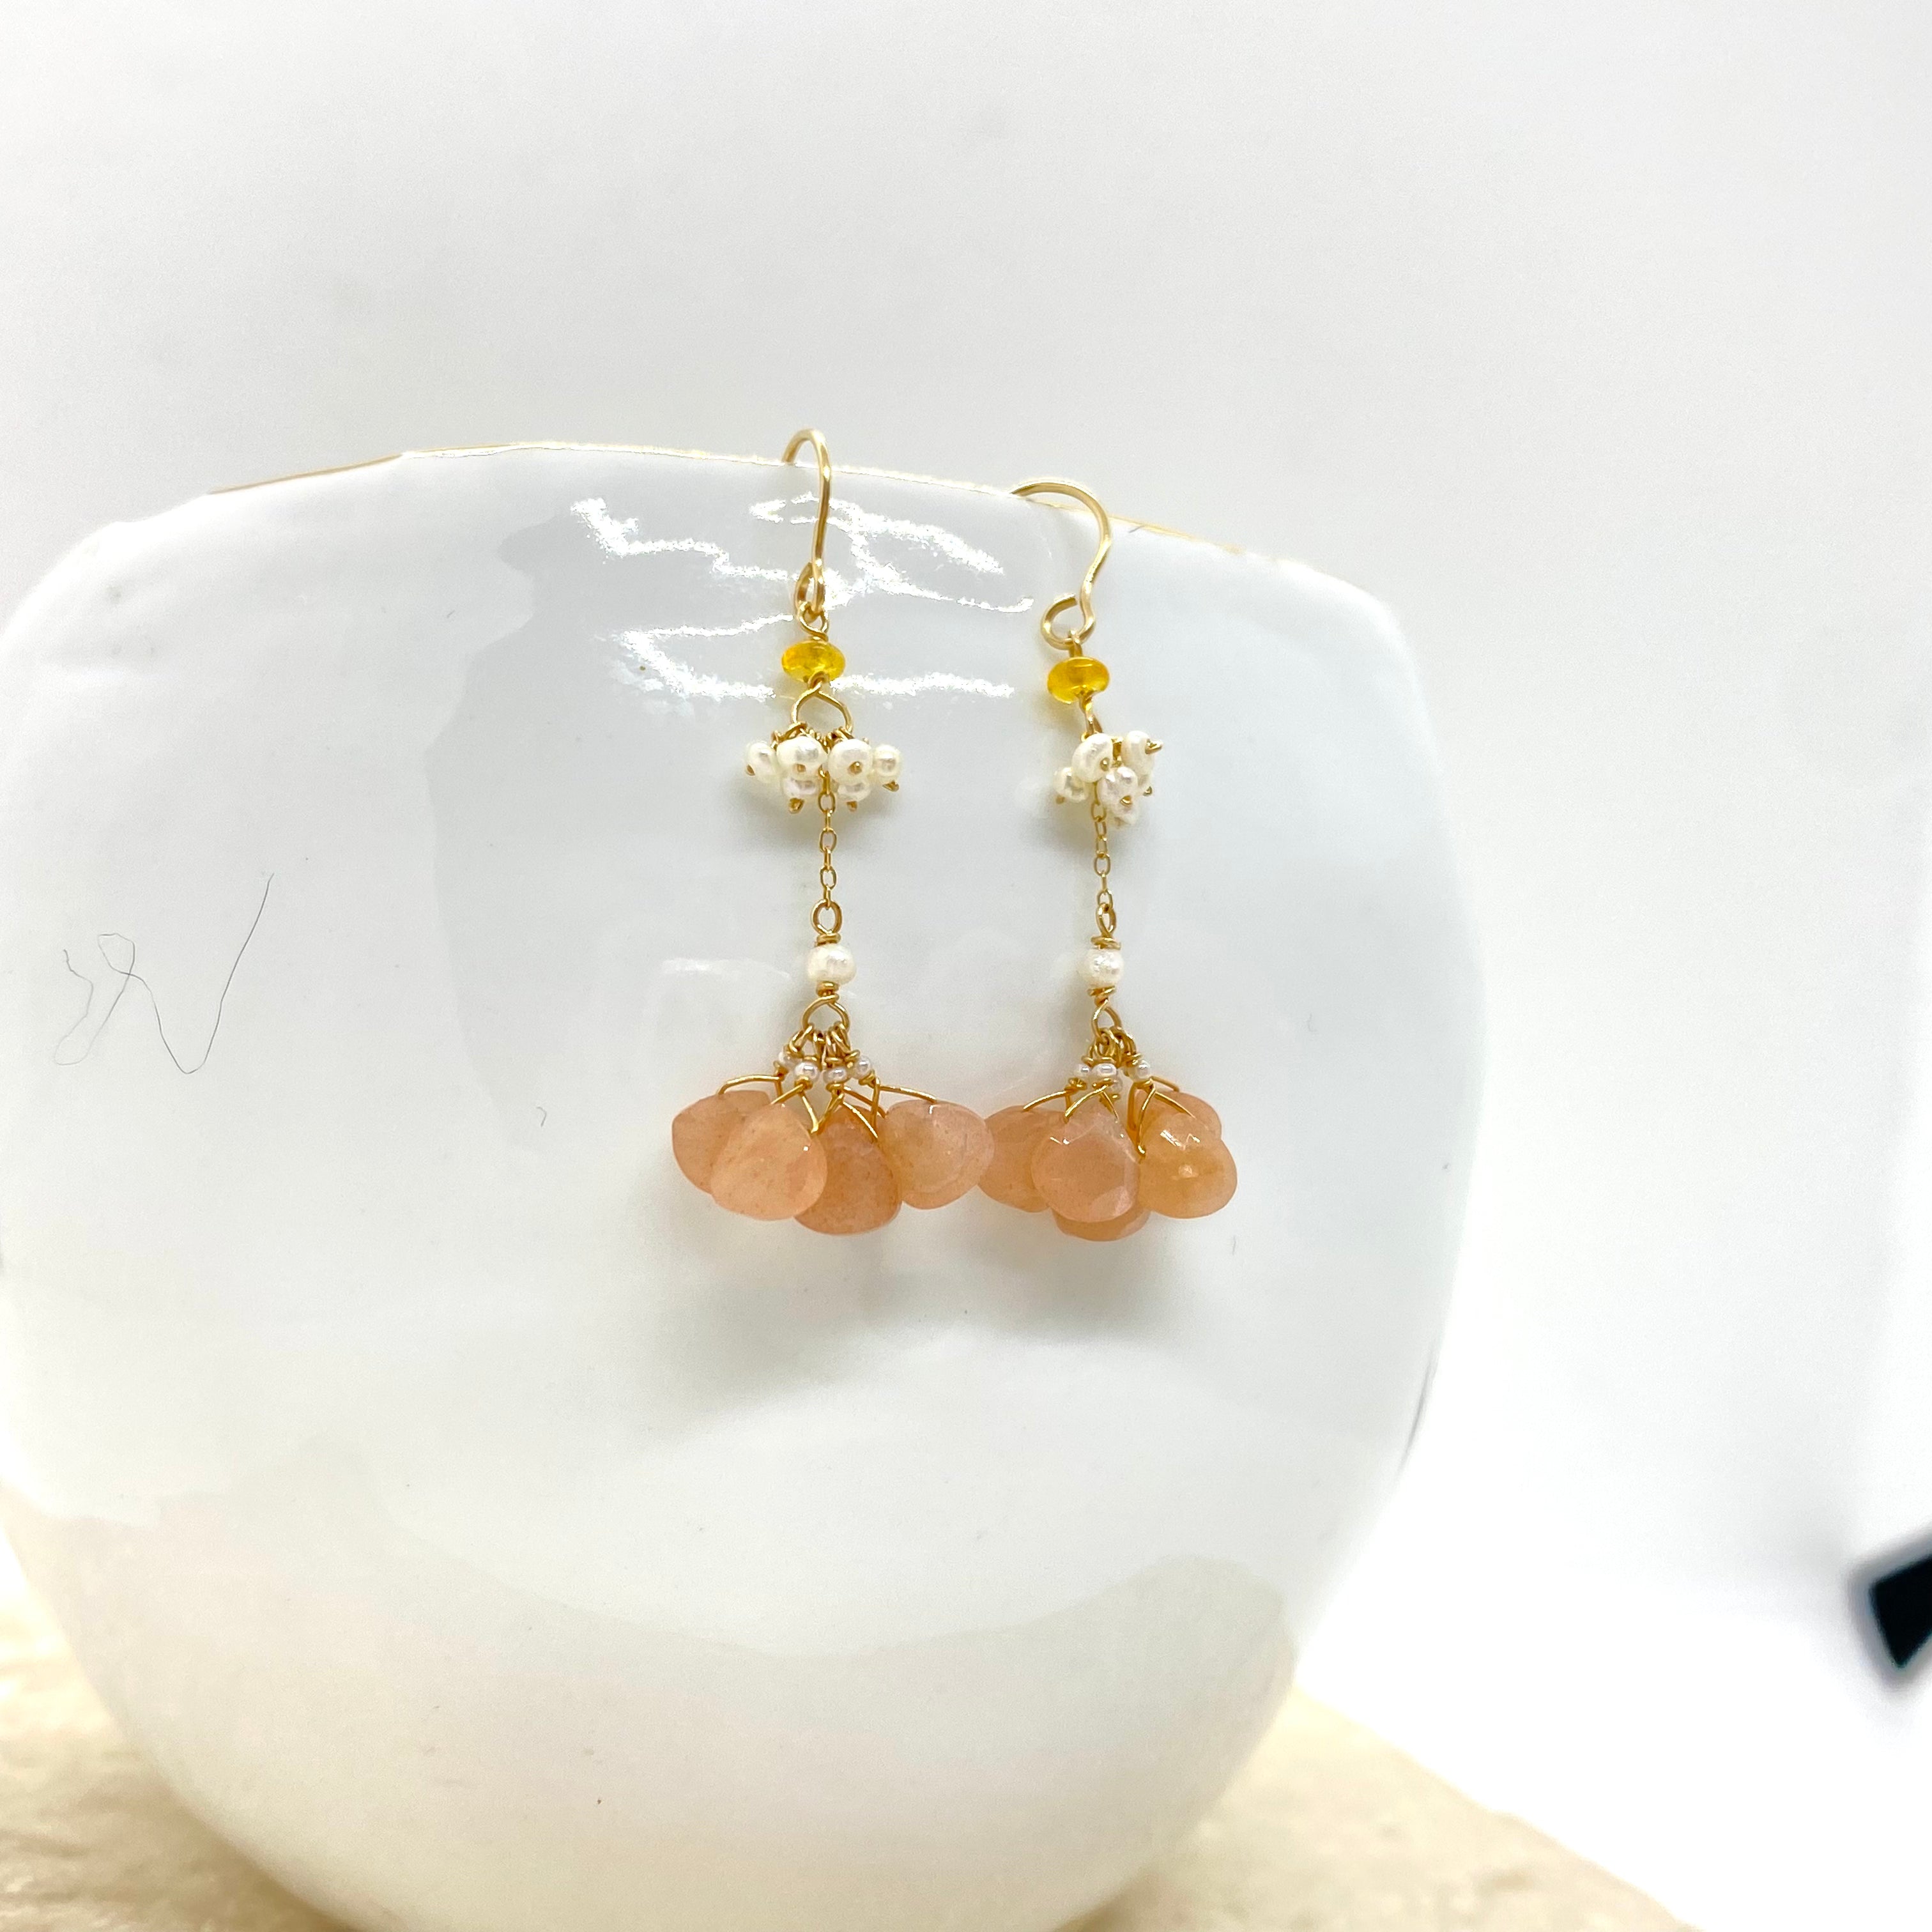 14k Gold Earrings w/ Peach Moonstone, Opal, Freshwater Pearls & Antique Italian Beads